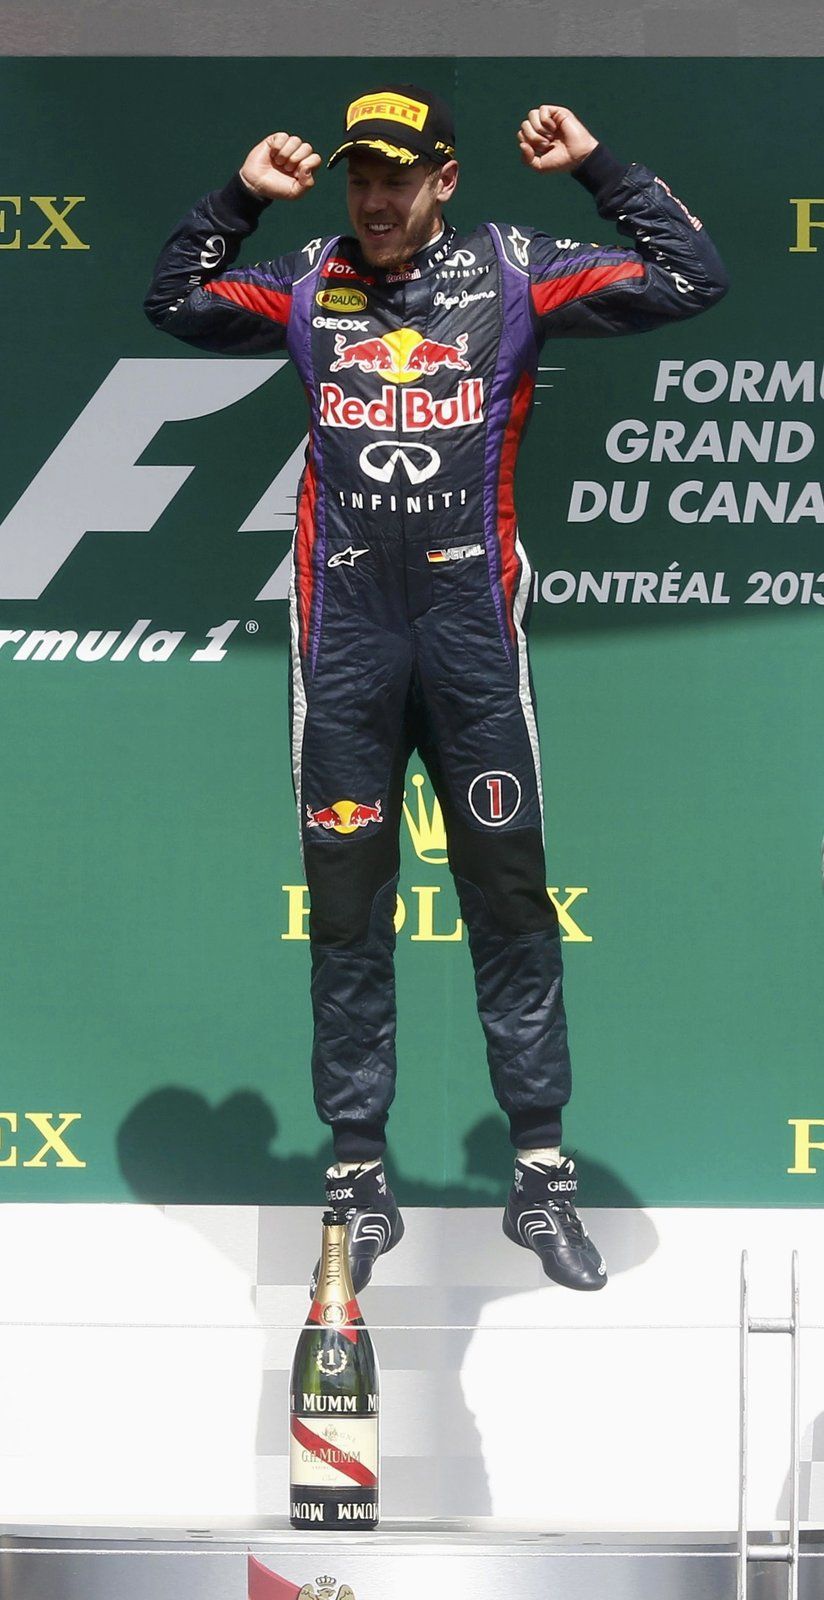 Sebastian Vettel slaví svůj premiérový triumf na kanadském asfaltu. Na cestě za ním ho nezastavil žádný ze soupeřů ani vlastní drobné zaváhání a dál zůstává v čele bodování.